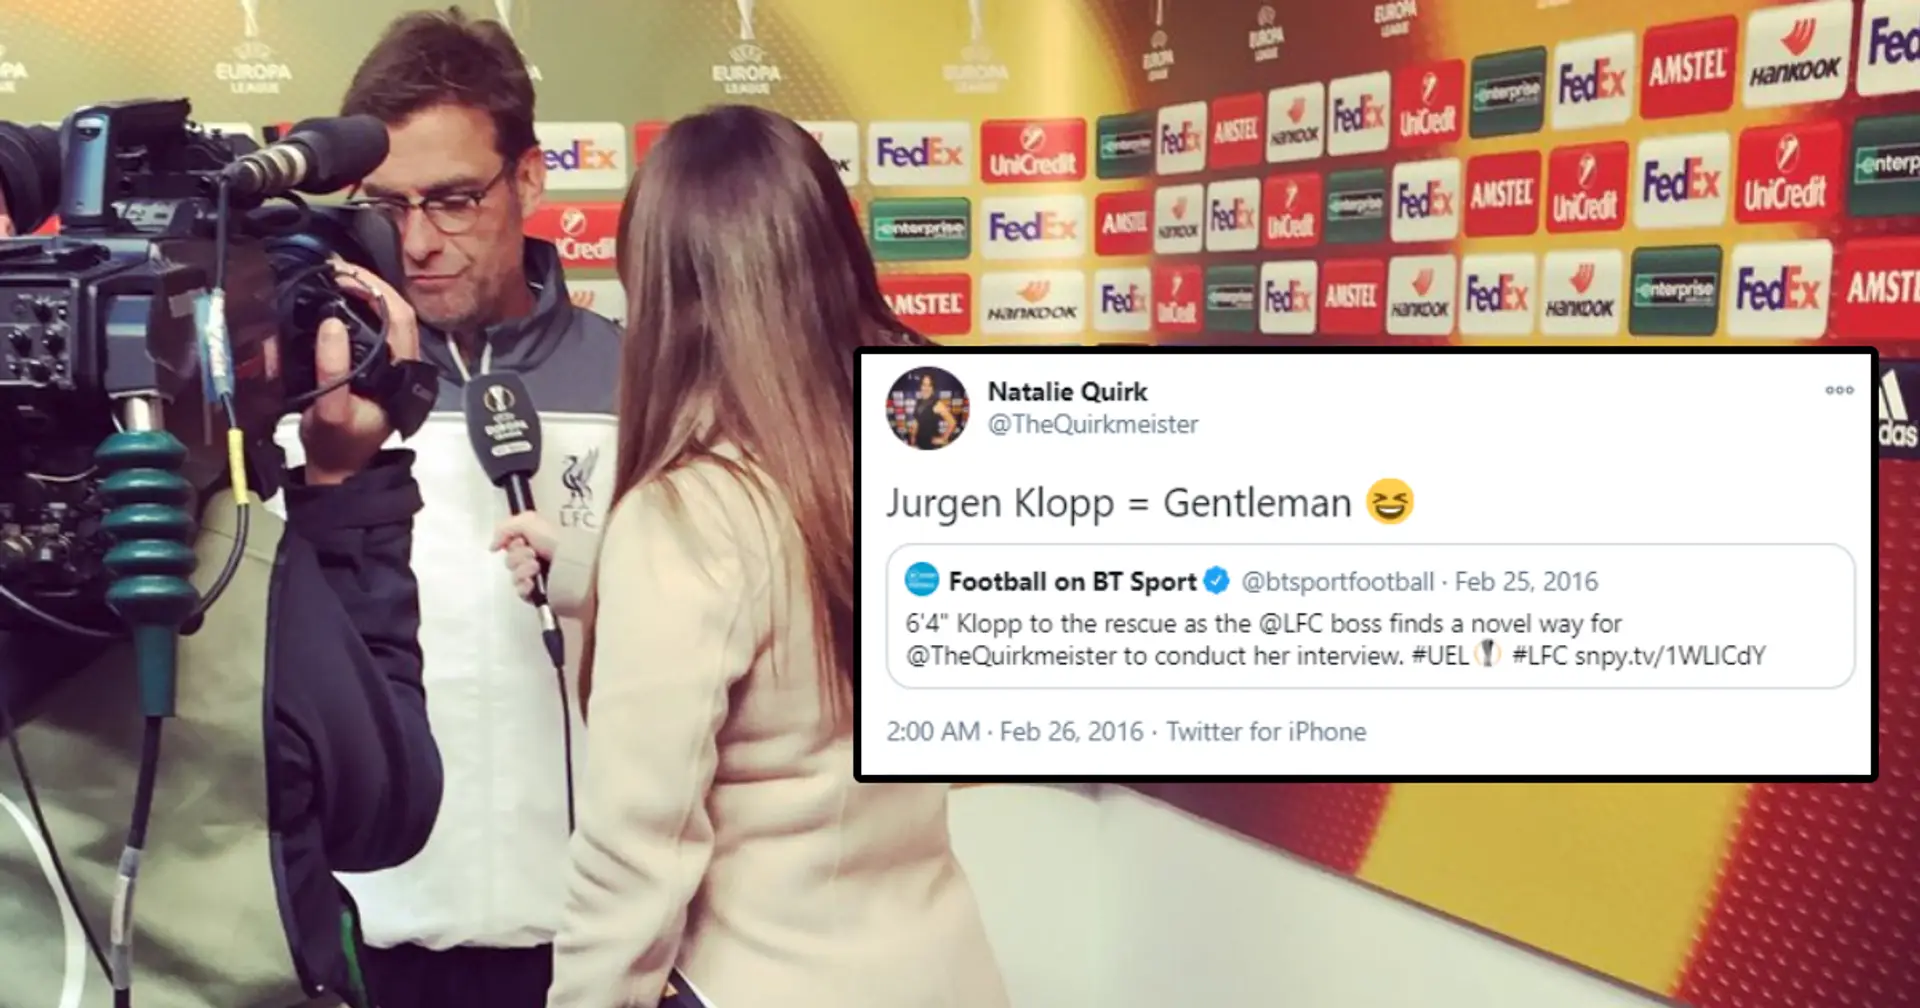 'Jurgen Klopp = Gentleman': When 6’4 Klopp helped petite reporter solve height disparity for interview